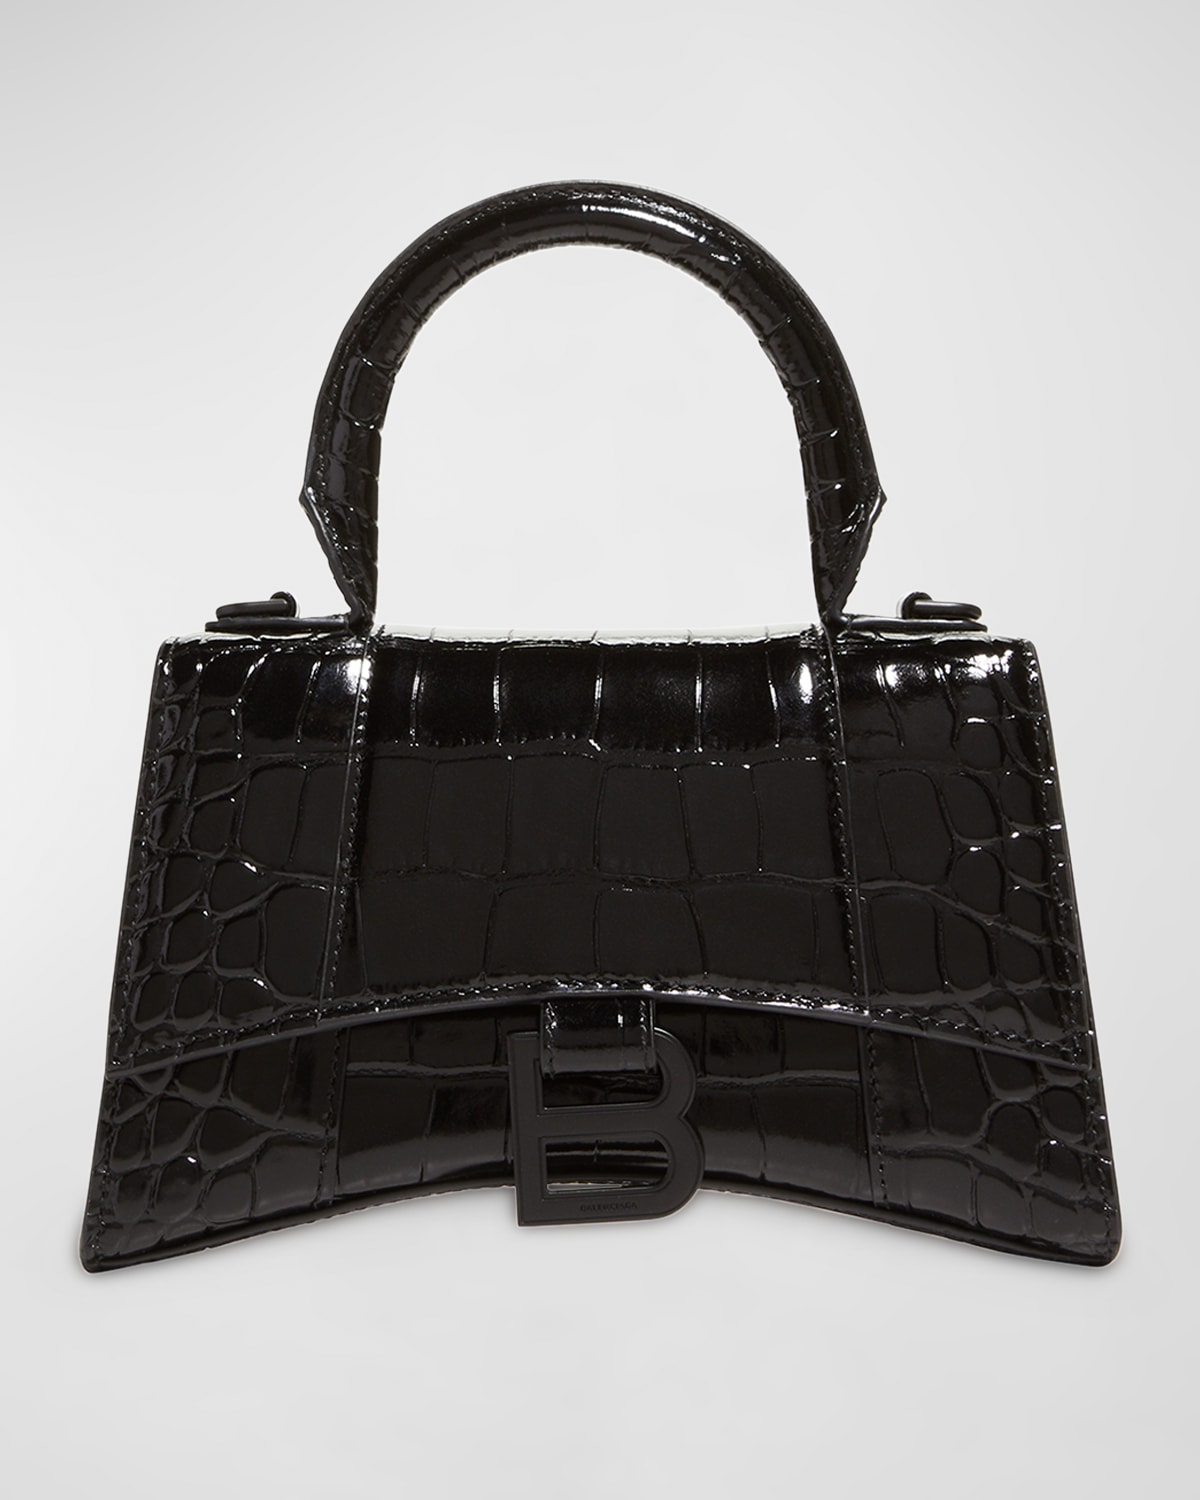 Balenciaga Hourglass XS Crocodile-Embossed Top Handle Bag